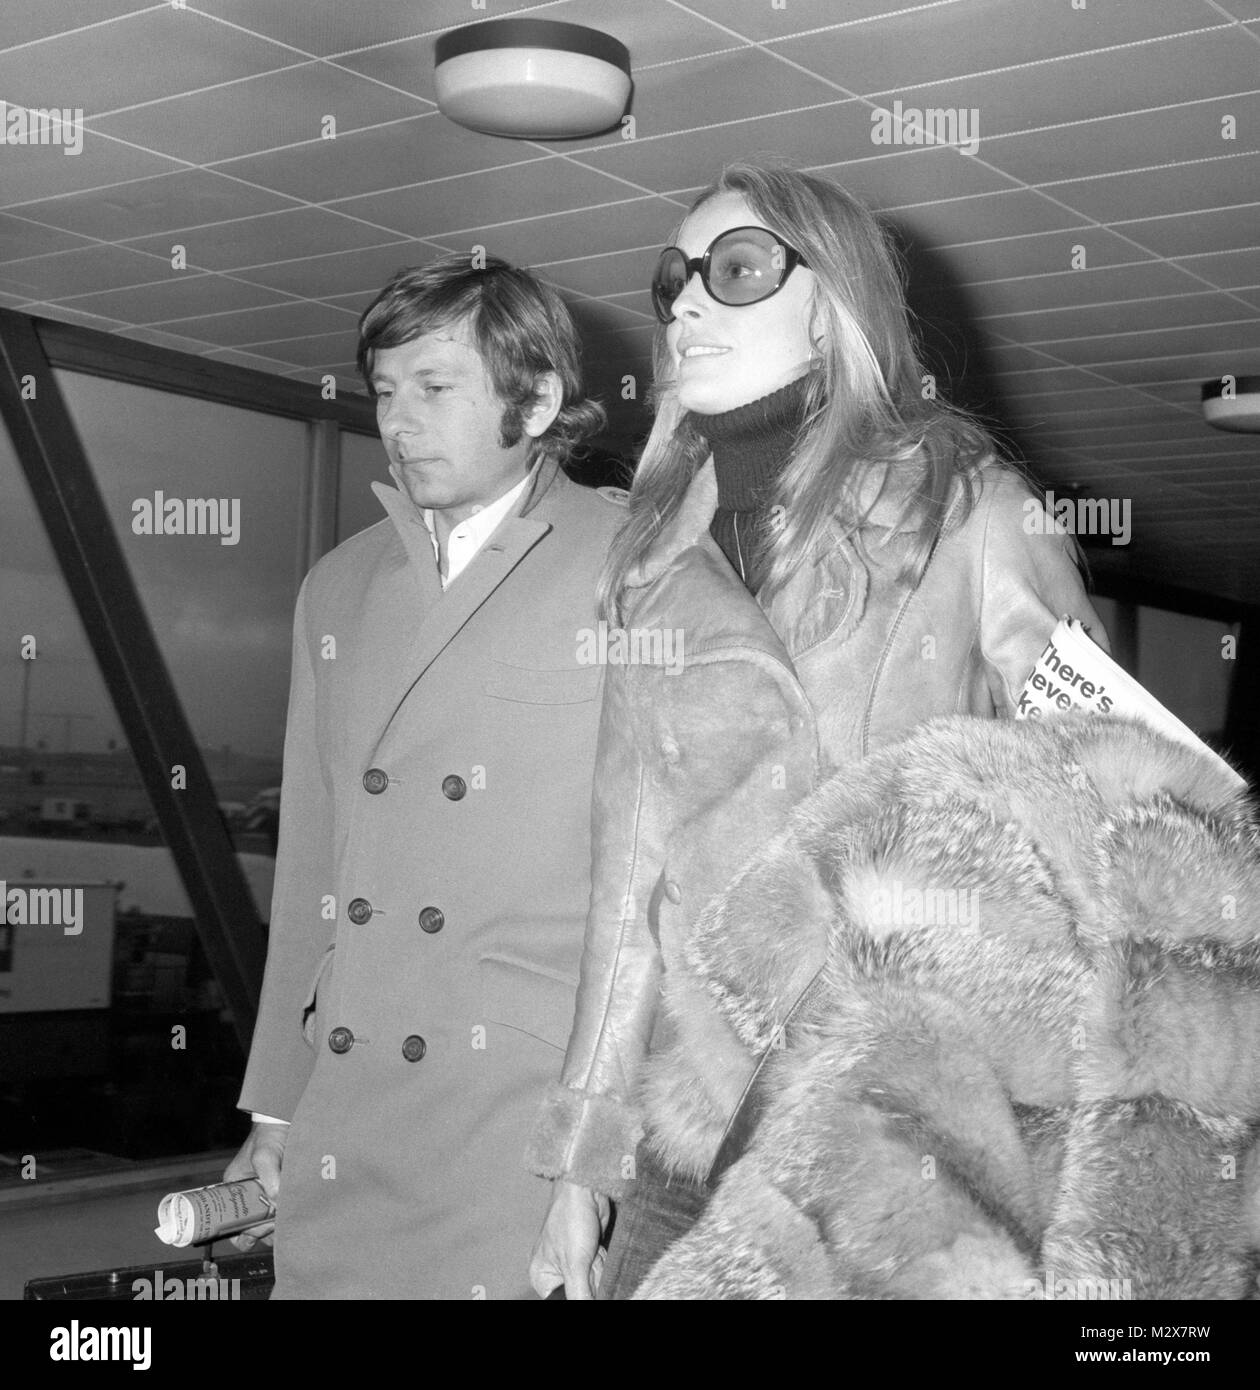 Actrice américaine Sharon Tate arrive avec son mari Roman Polanski, à l'aéroport de Heathrow, Londres, de Venise à assister à l'avant-première de son film 'Rosemary's Baby'. Banque D'Images